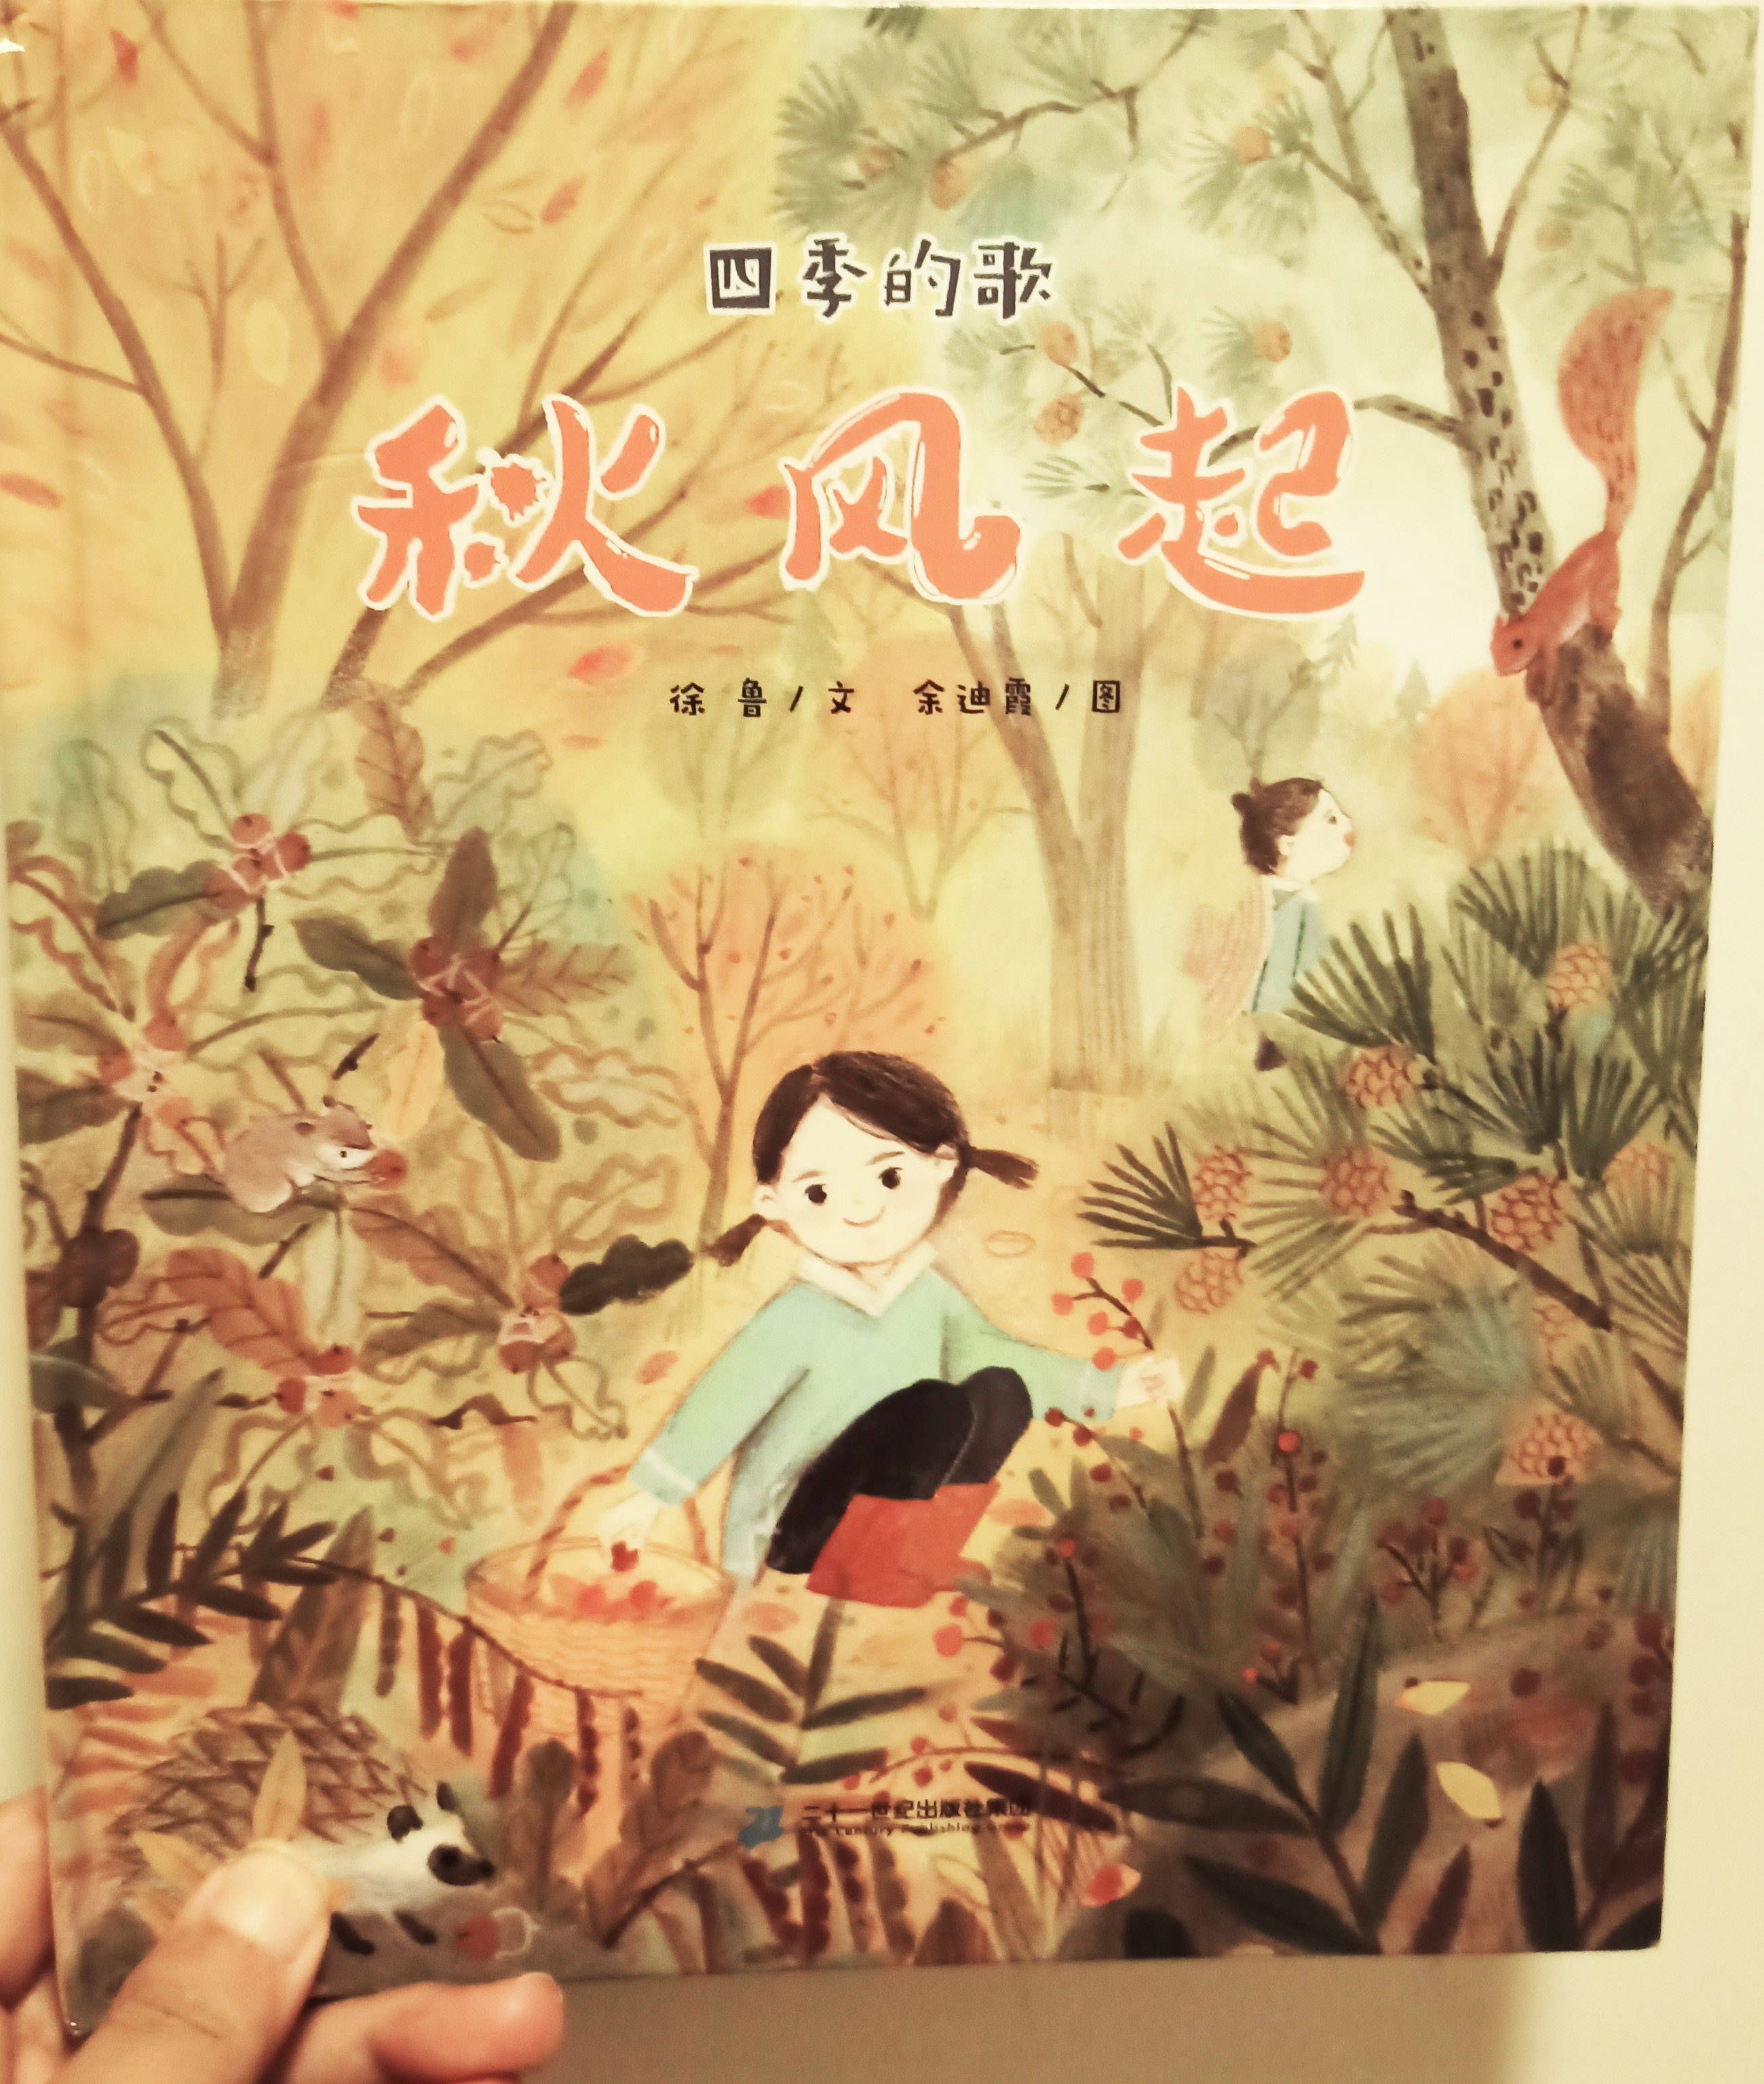 四季的歌《秋风起》绘本,透过徐鲁老师优美的的文字和余迪霞老师的